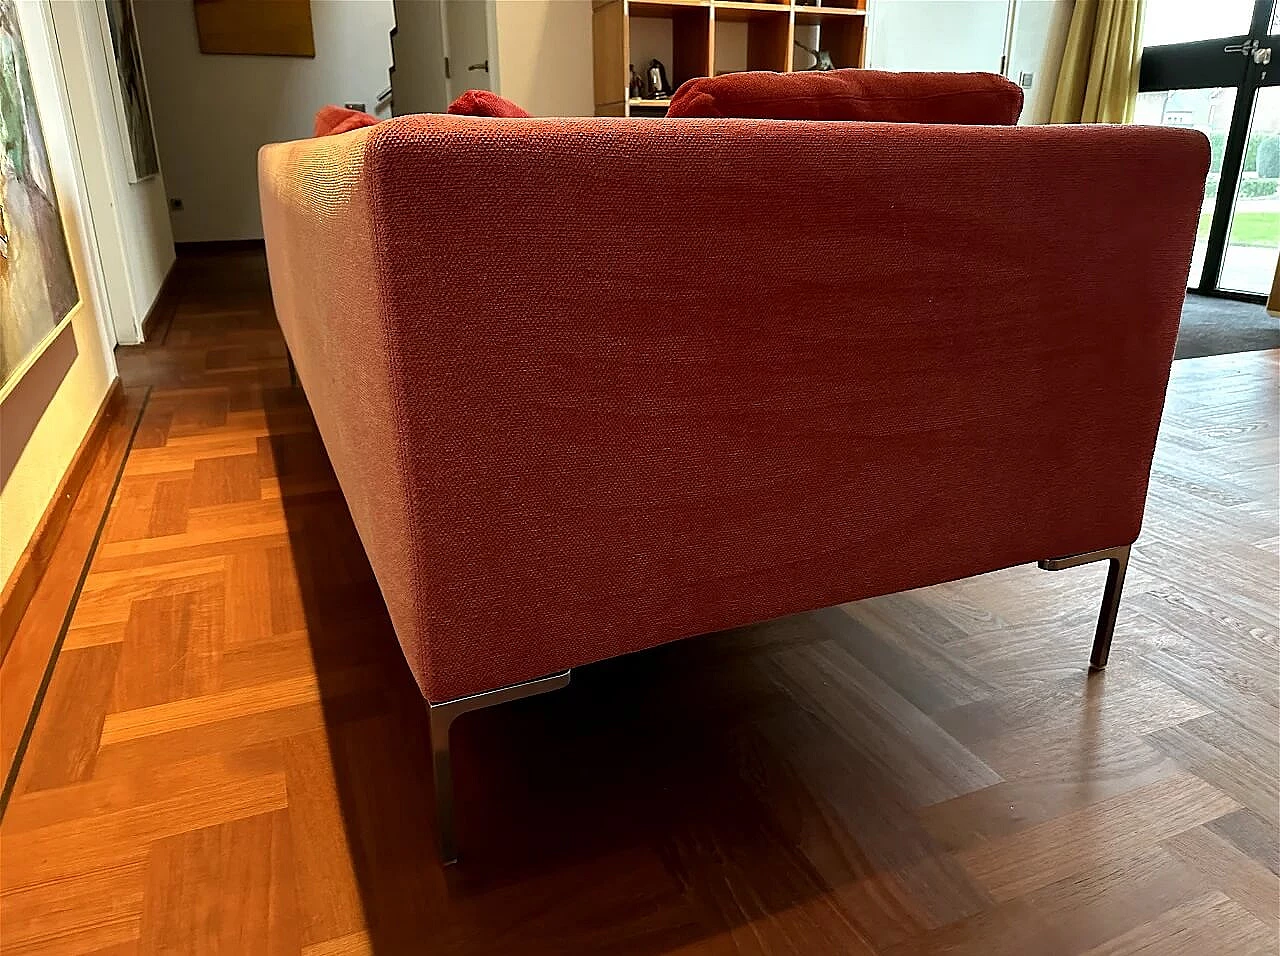 CH228 Charles sofa in red Maxalto-Cat cotton by Antonio Citterio for B&B Italia 2